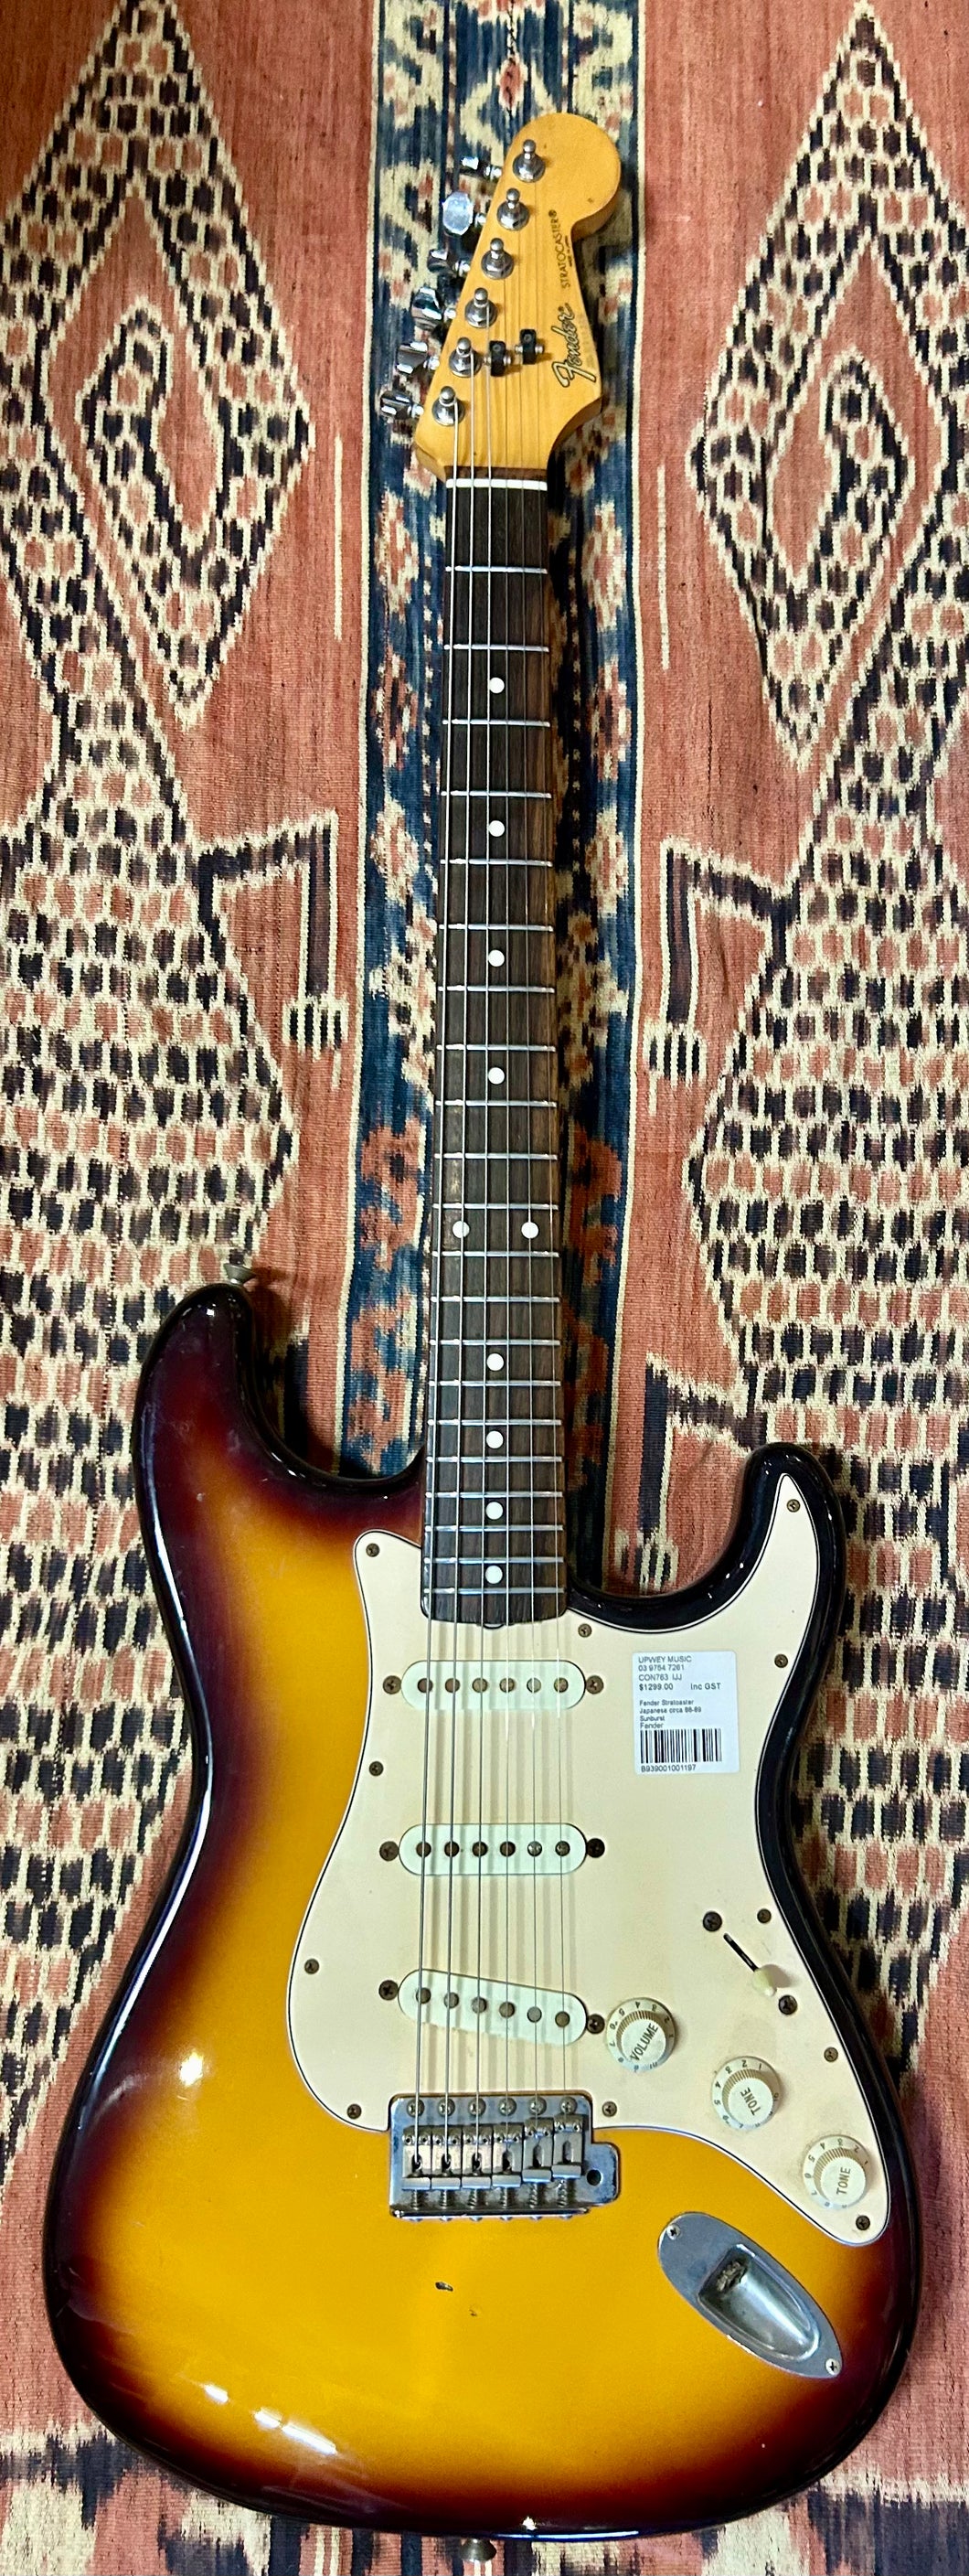 Fender Stratoaster Japanese circa 88-89 Sunburst